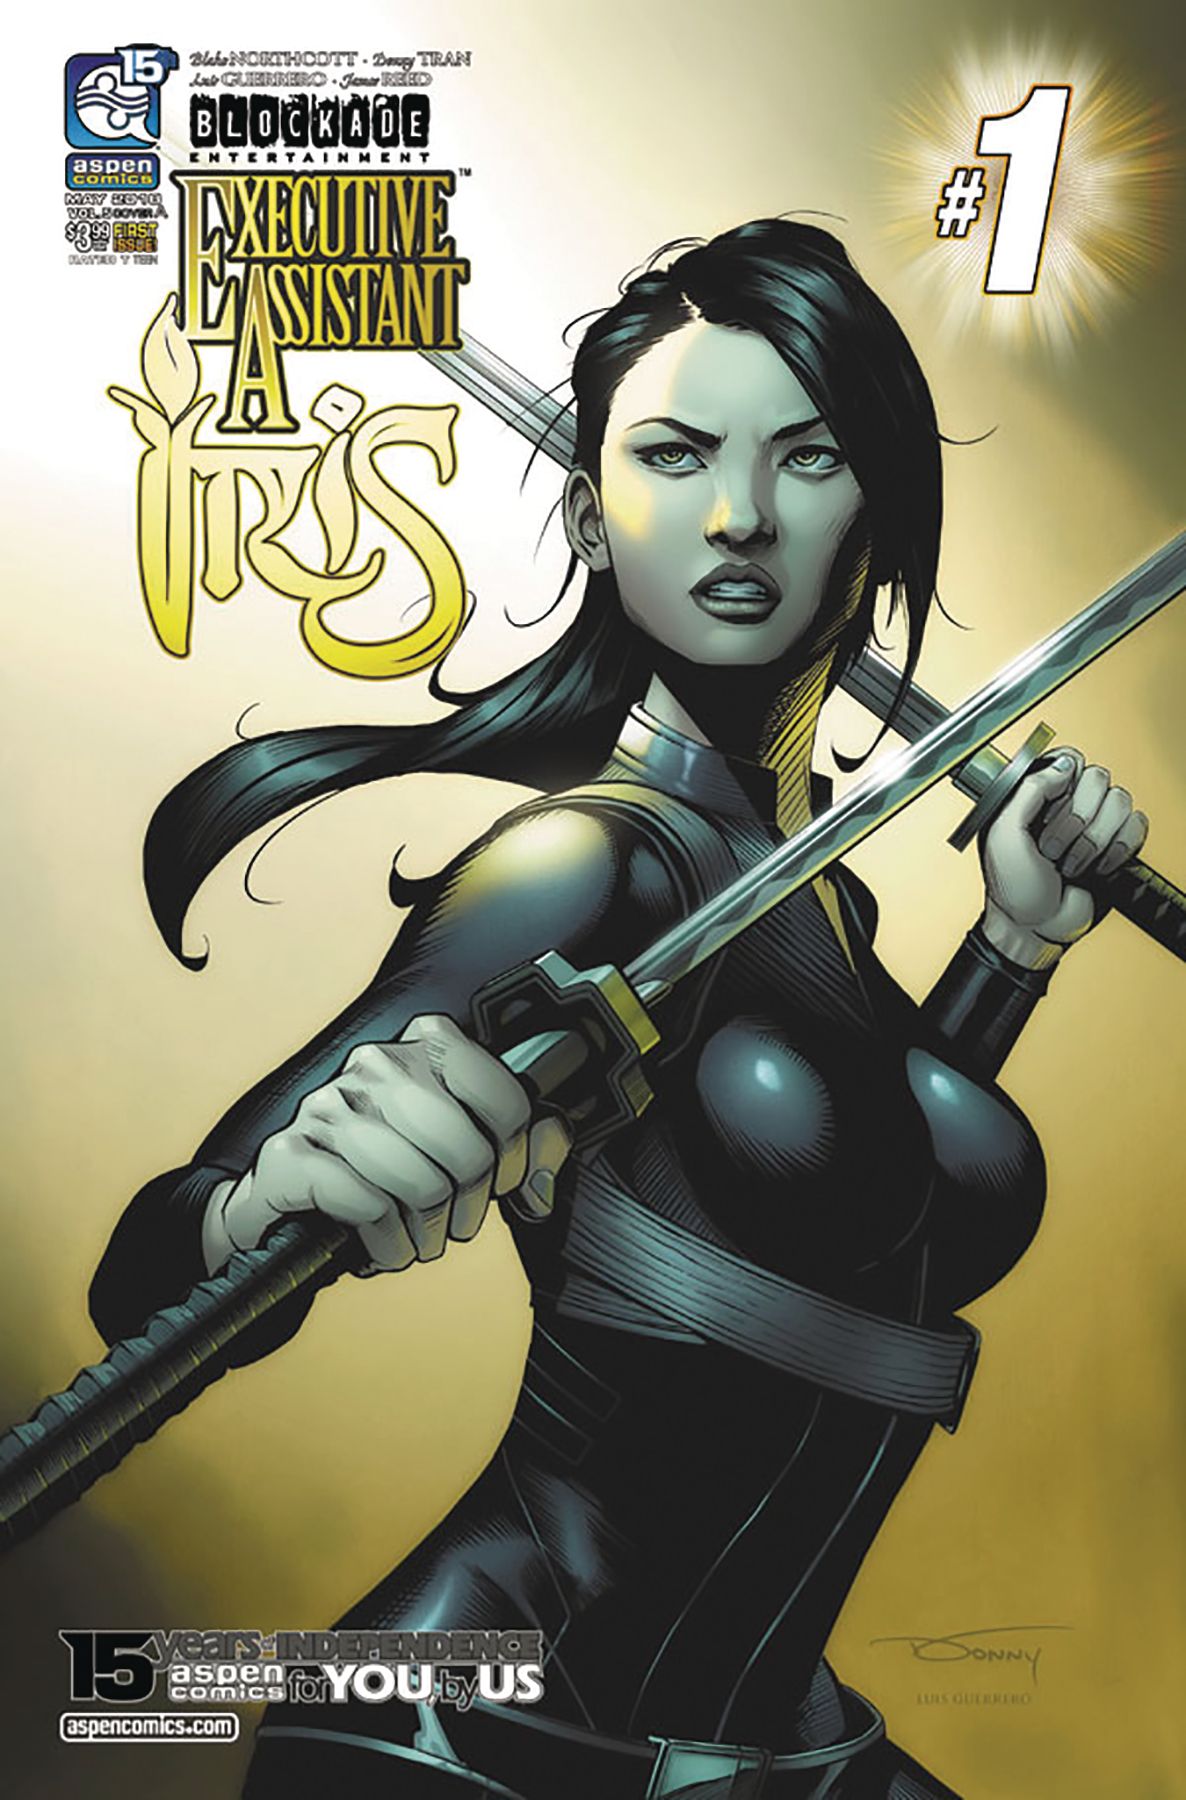 Executive Assistant Iris #1 Comic